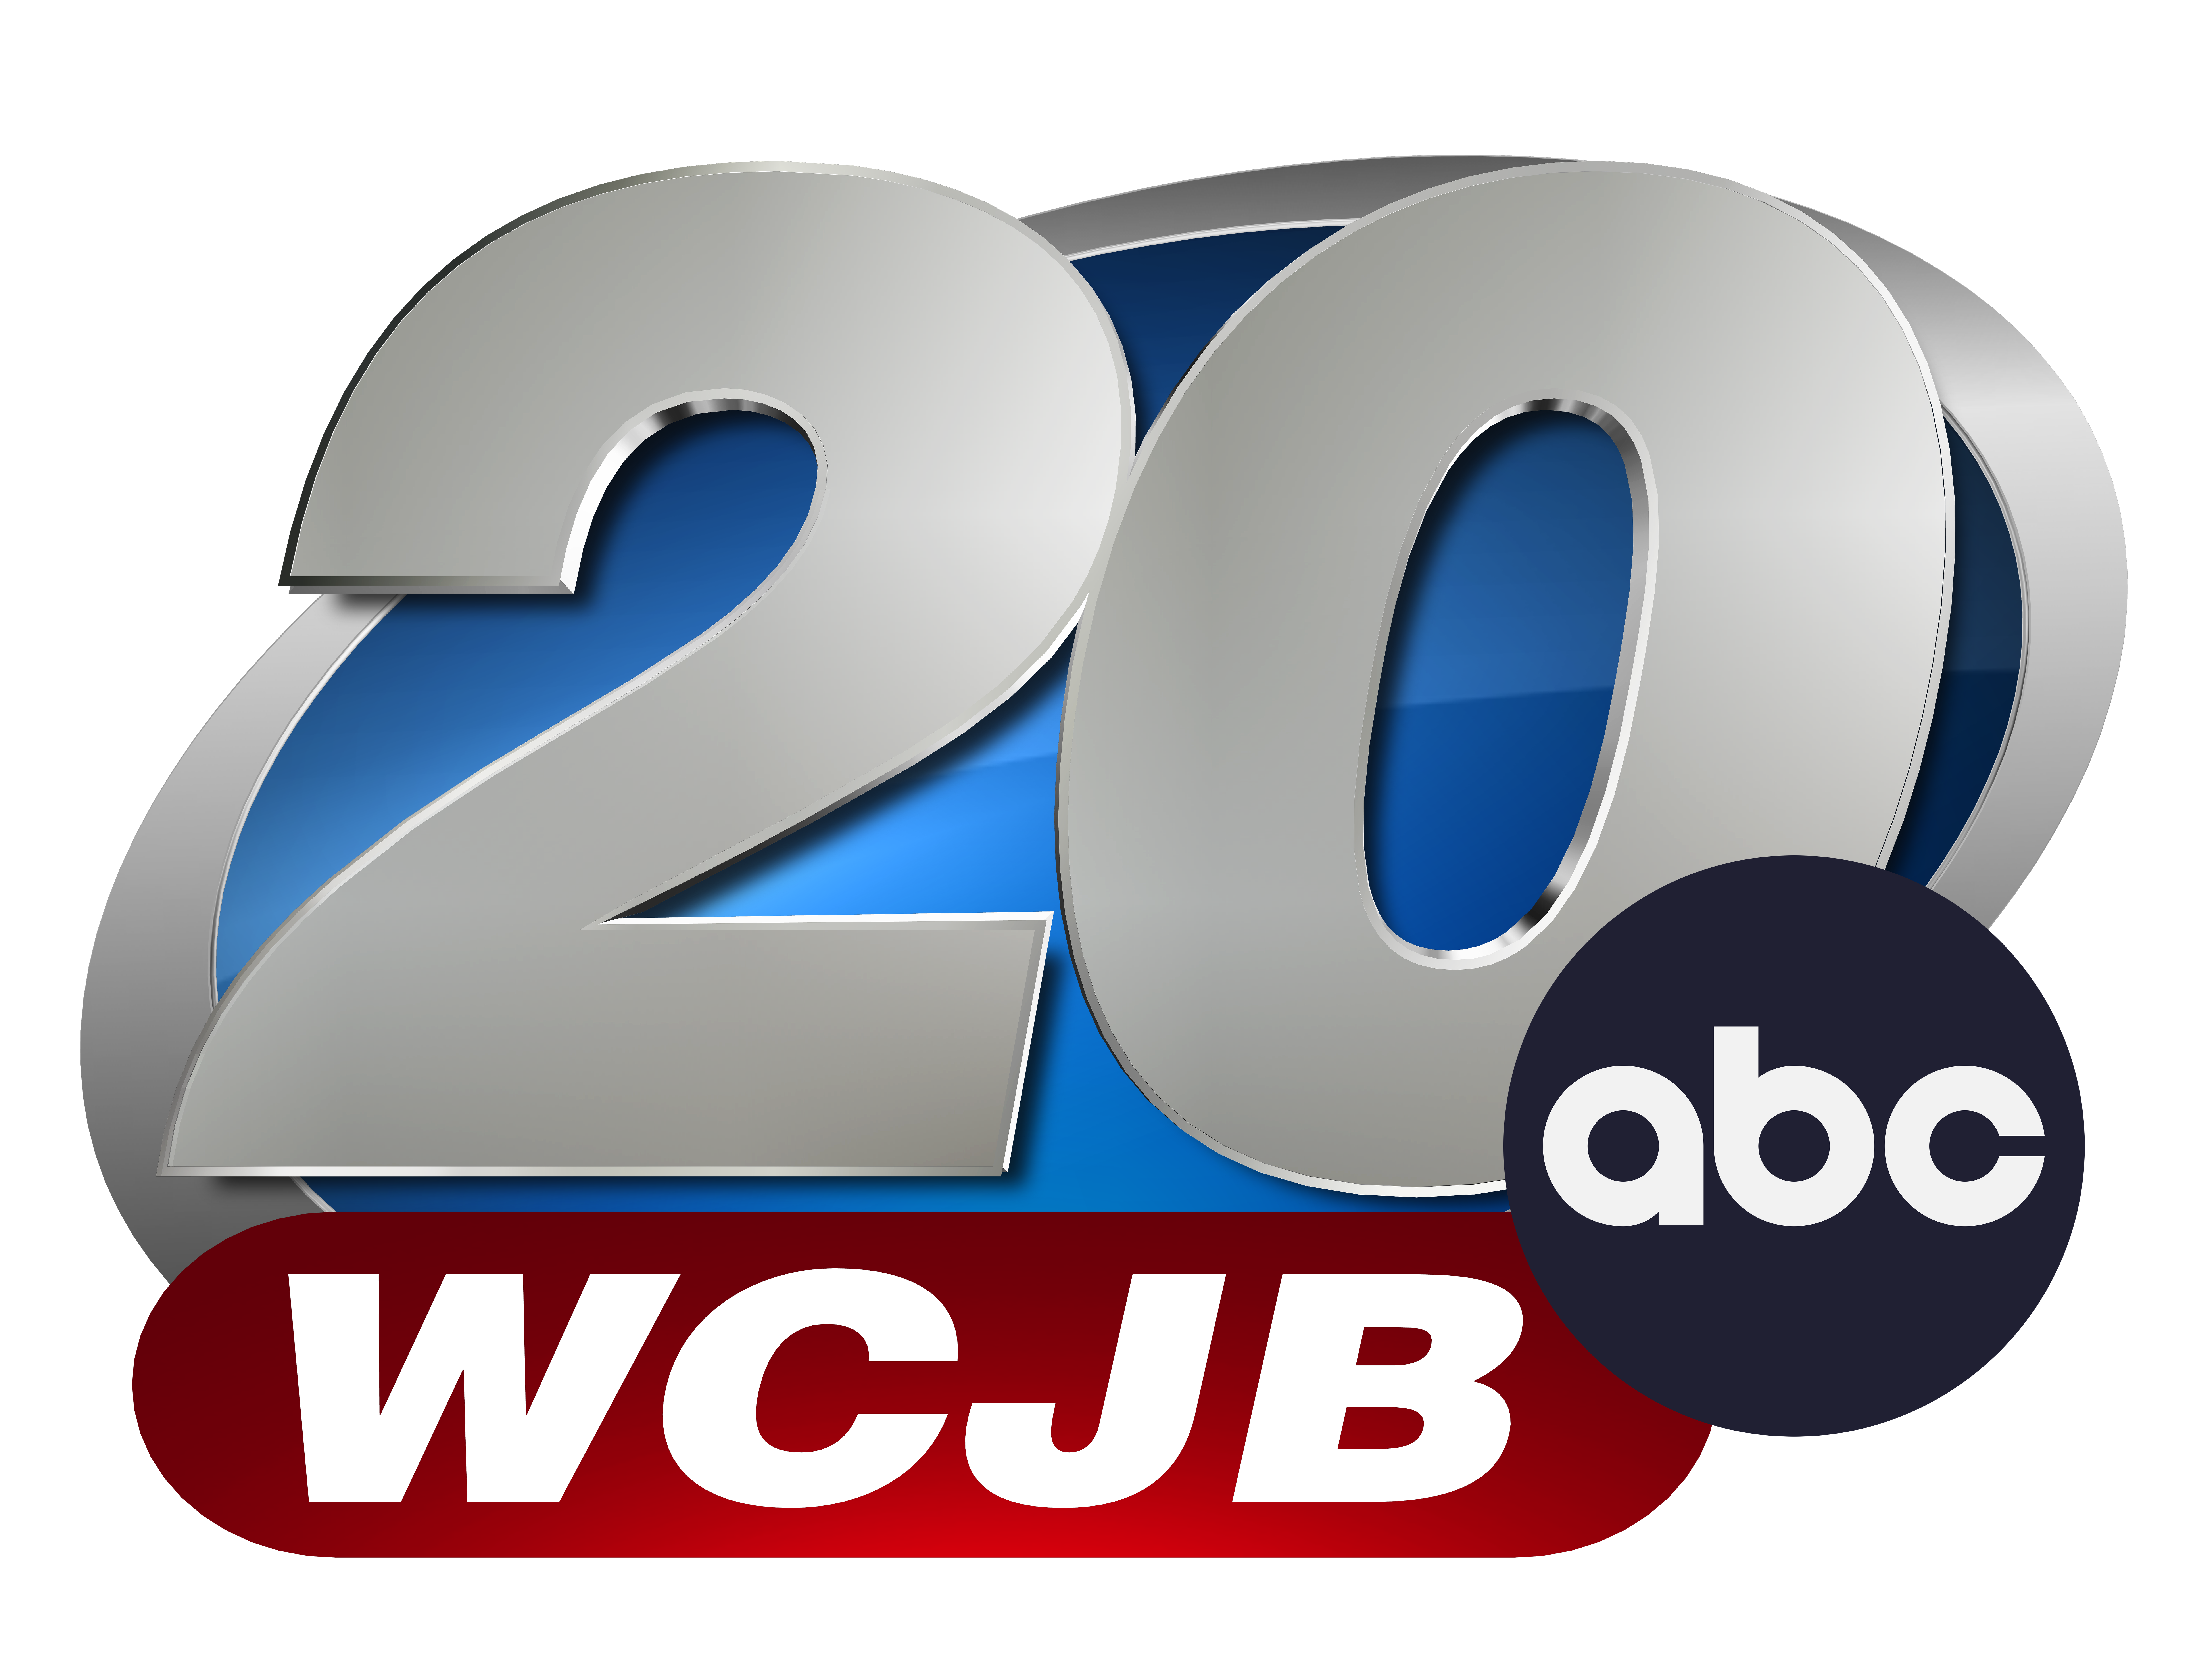 z. WCJB-TV (Media)